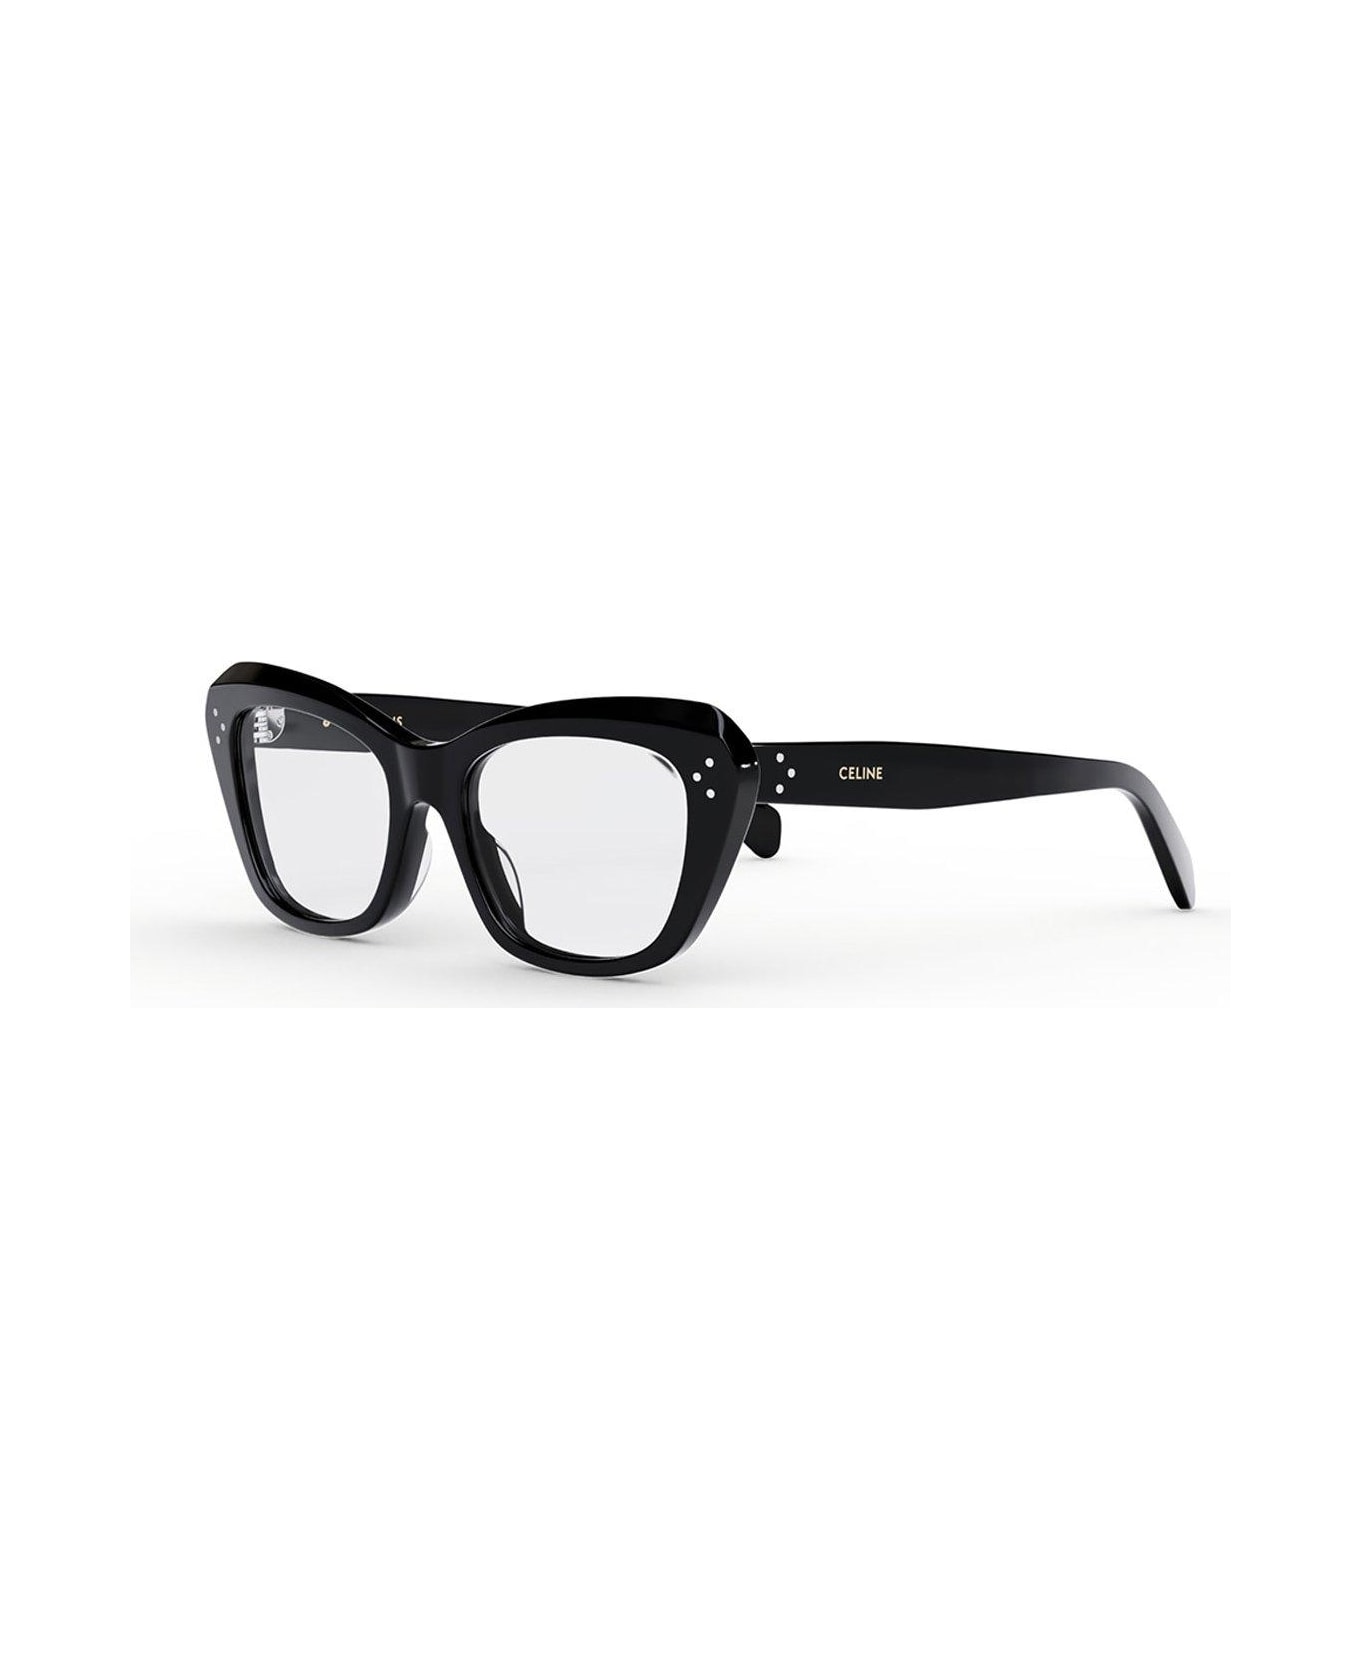 Celine Cat-eye Glasses - 001